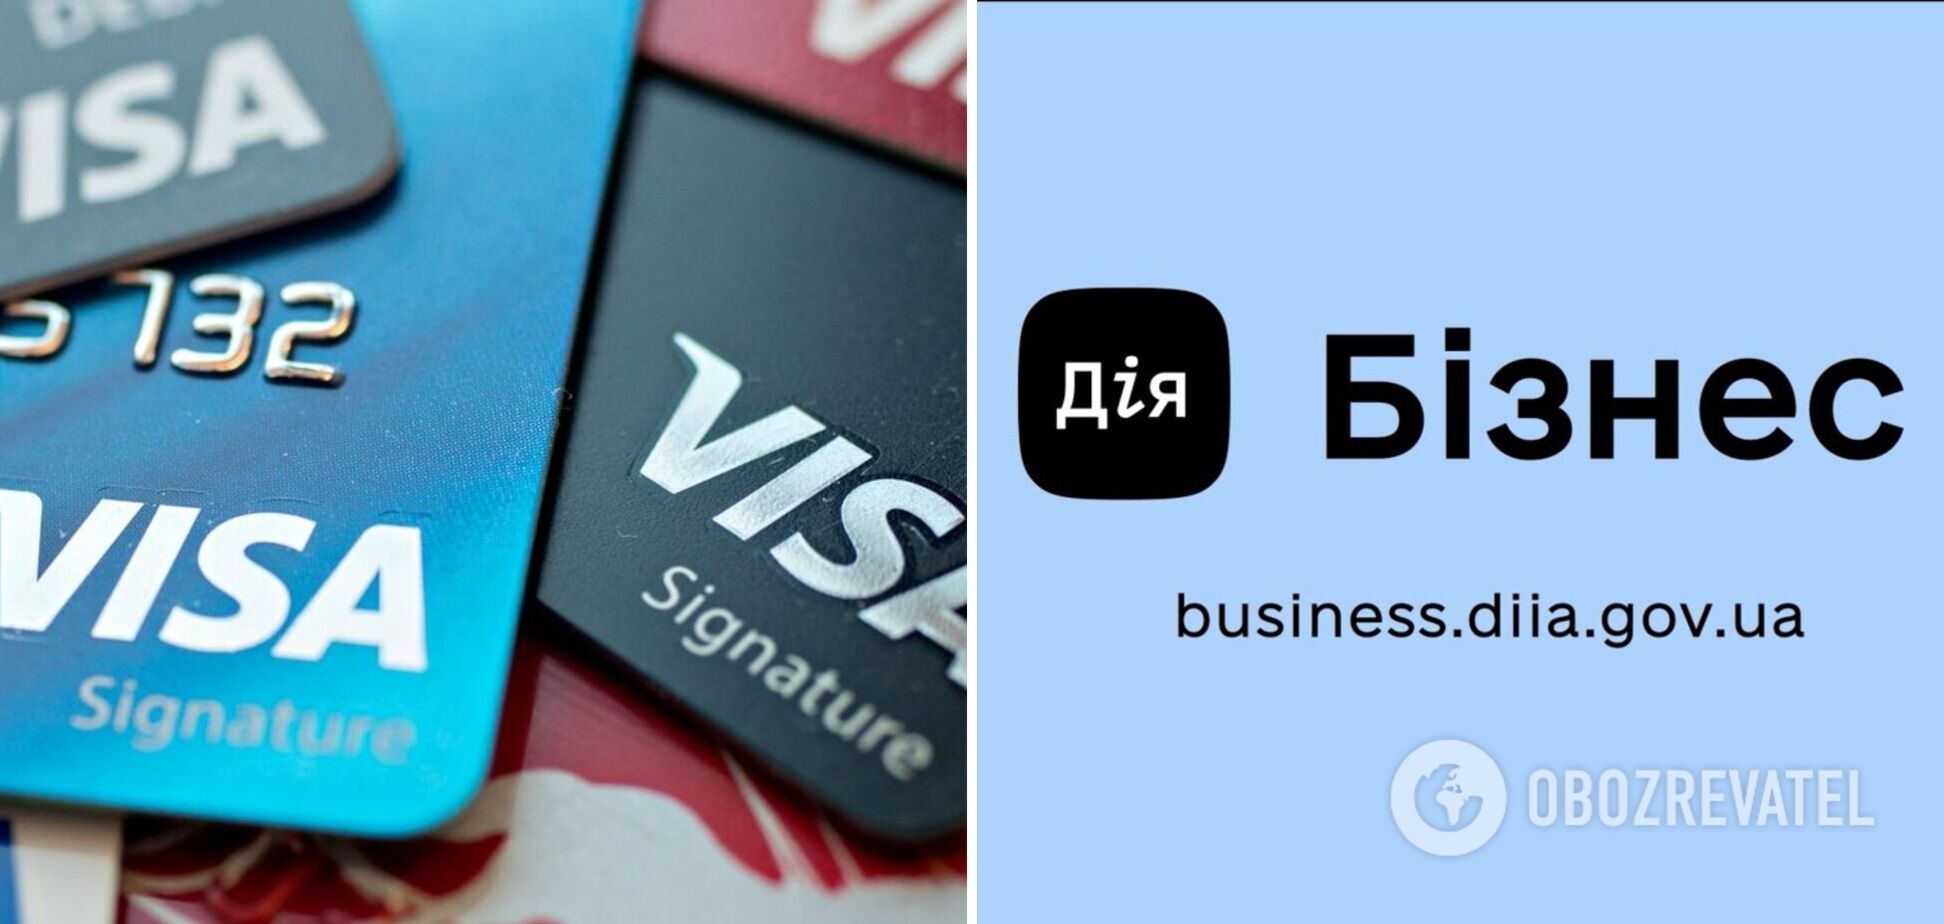 Visa финансово поддержала открытие обновленного консалтингового центра 'Действие. Бизнес' в Буче